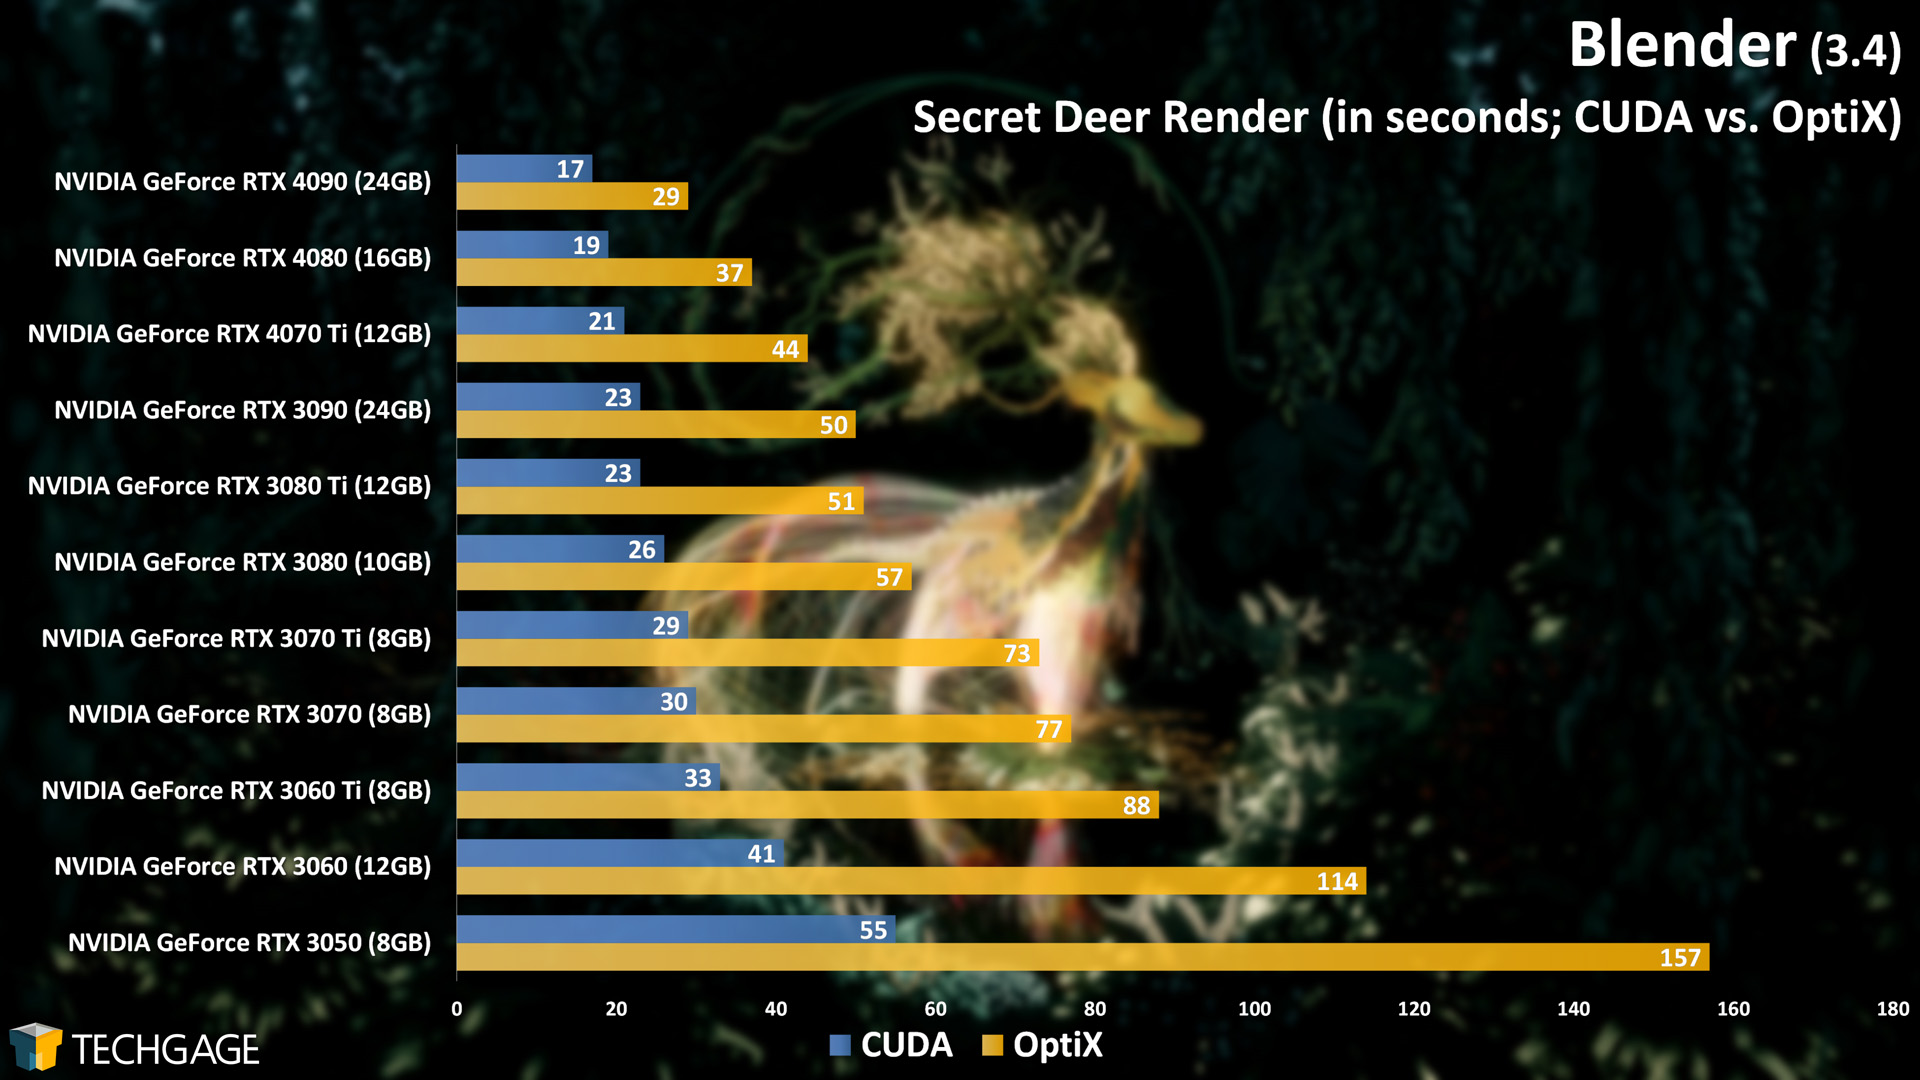 Blender - Cycles GPU Render Performance (Secret Deer) (CUDA vs OptiX)